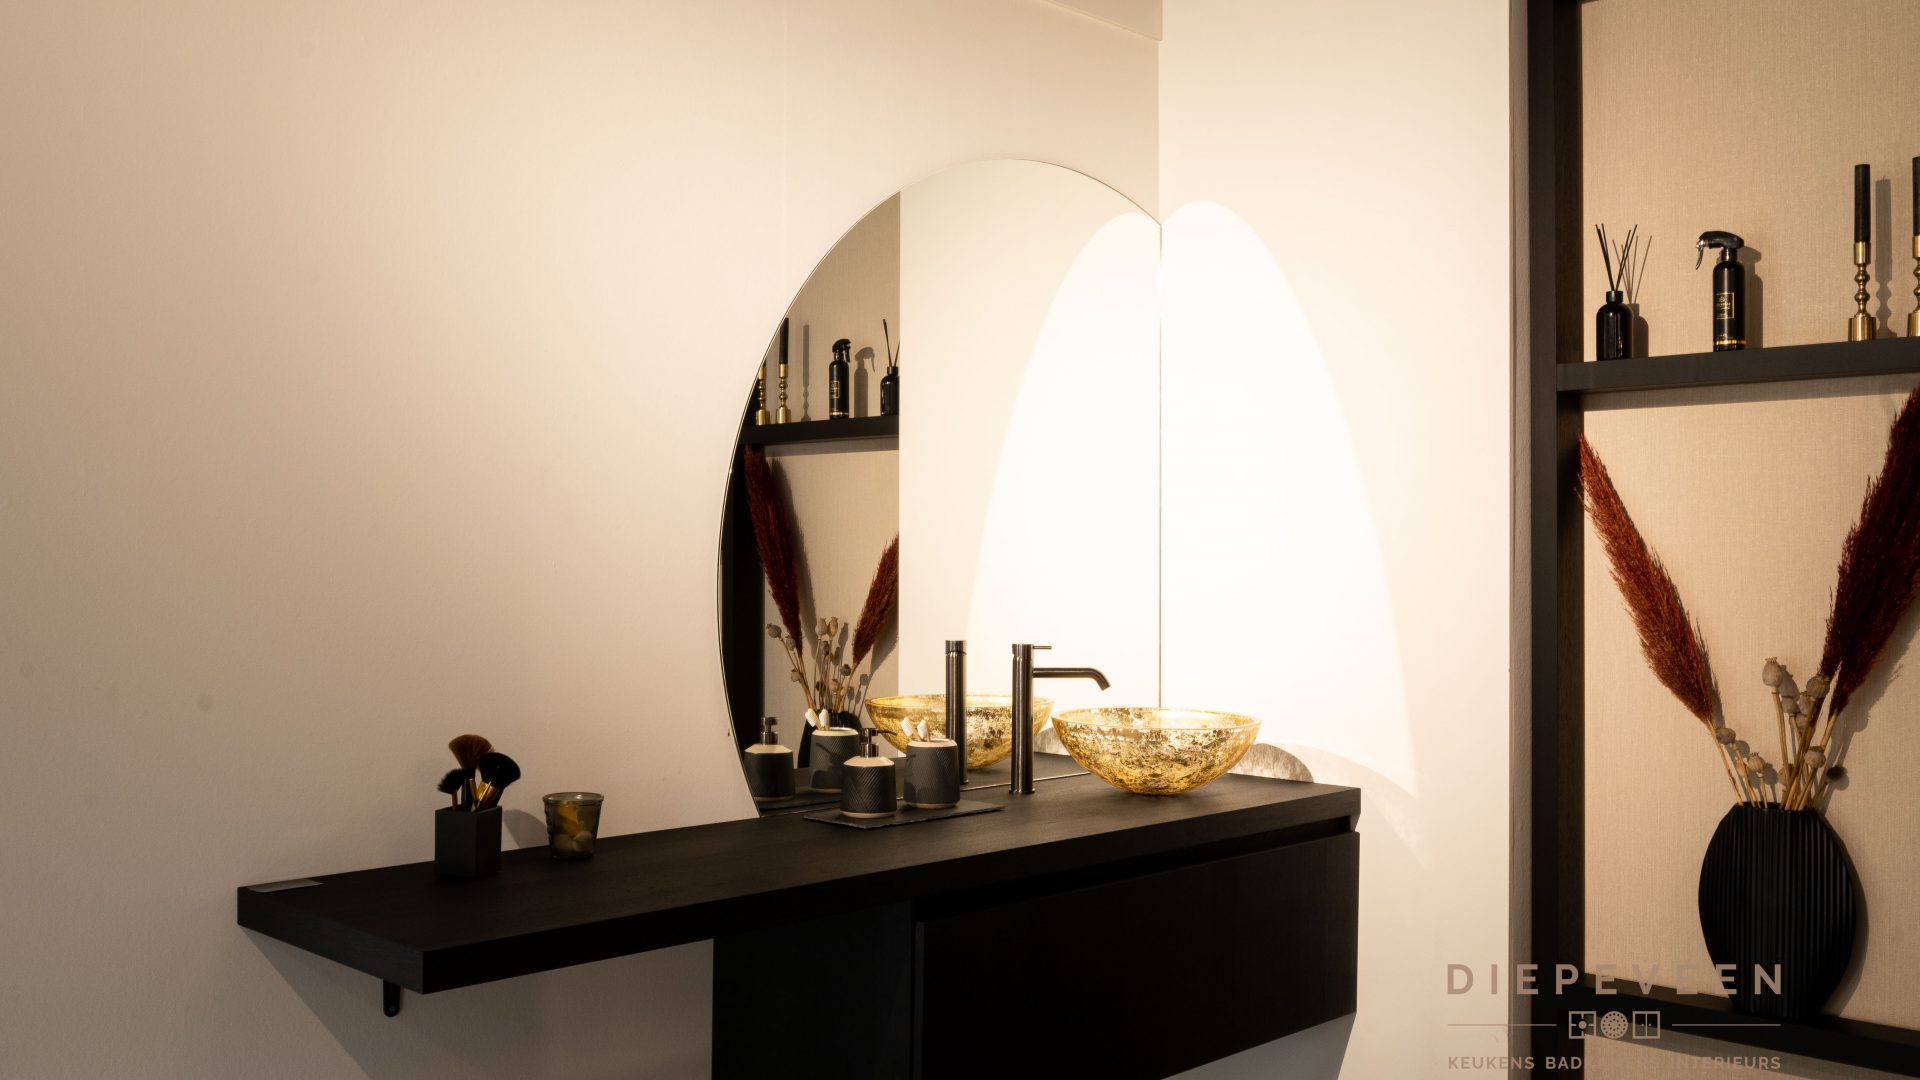 diepeveen-keukens-en-badkamers-showroom-3199